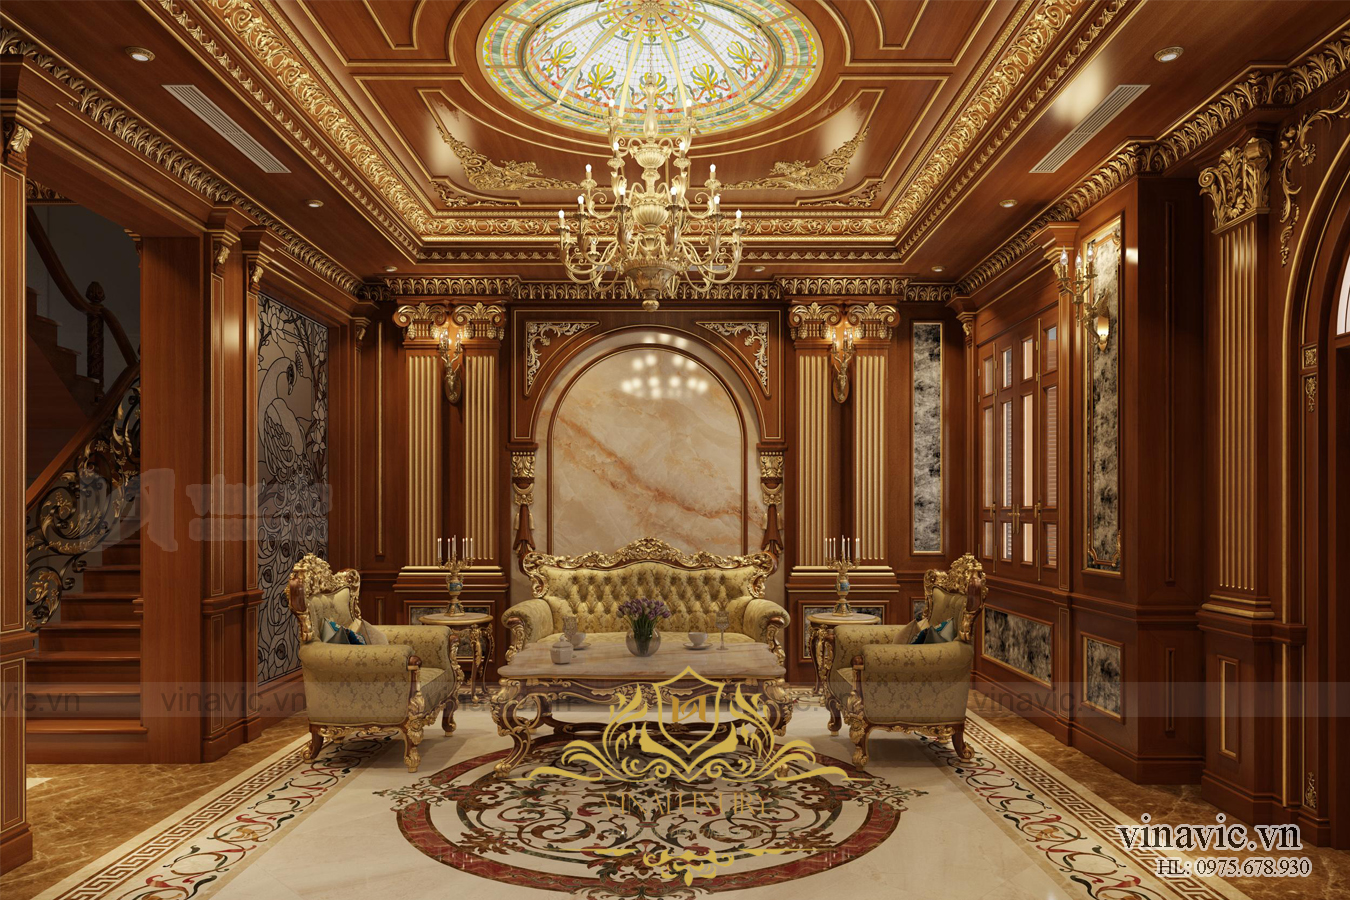 Nội thất phòng khách lâu đài cổ điển ốp gỗ màu nâu trầm, đá tự nhiên, cùng họa tiết mạ vàng bắt mắt